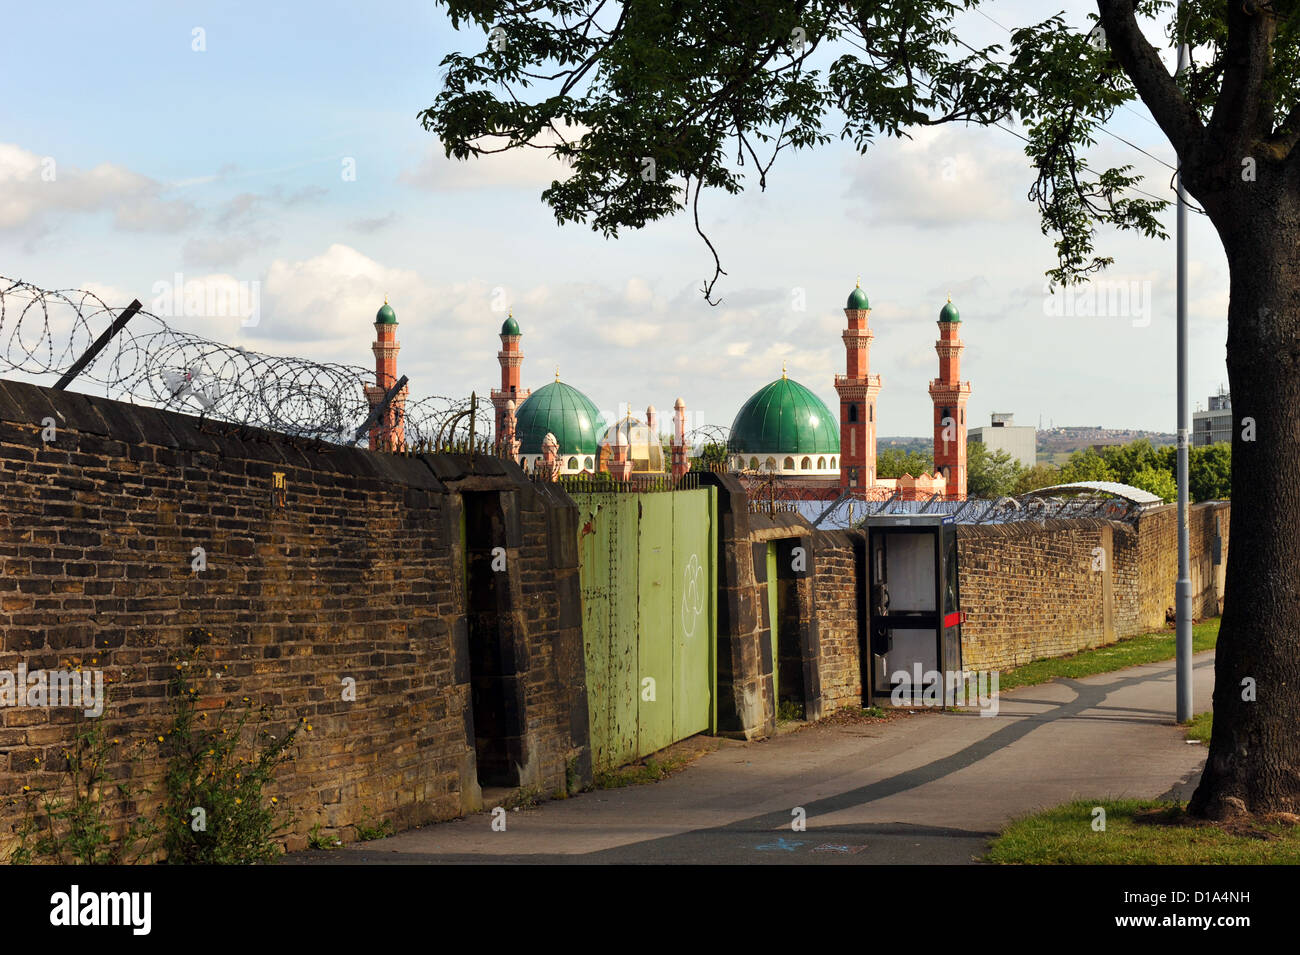 Moschee in der Nähe von Kleingärten, Bradford UK Stockfoto